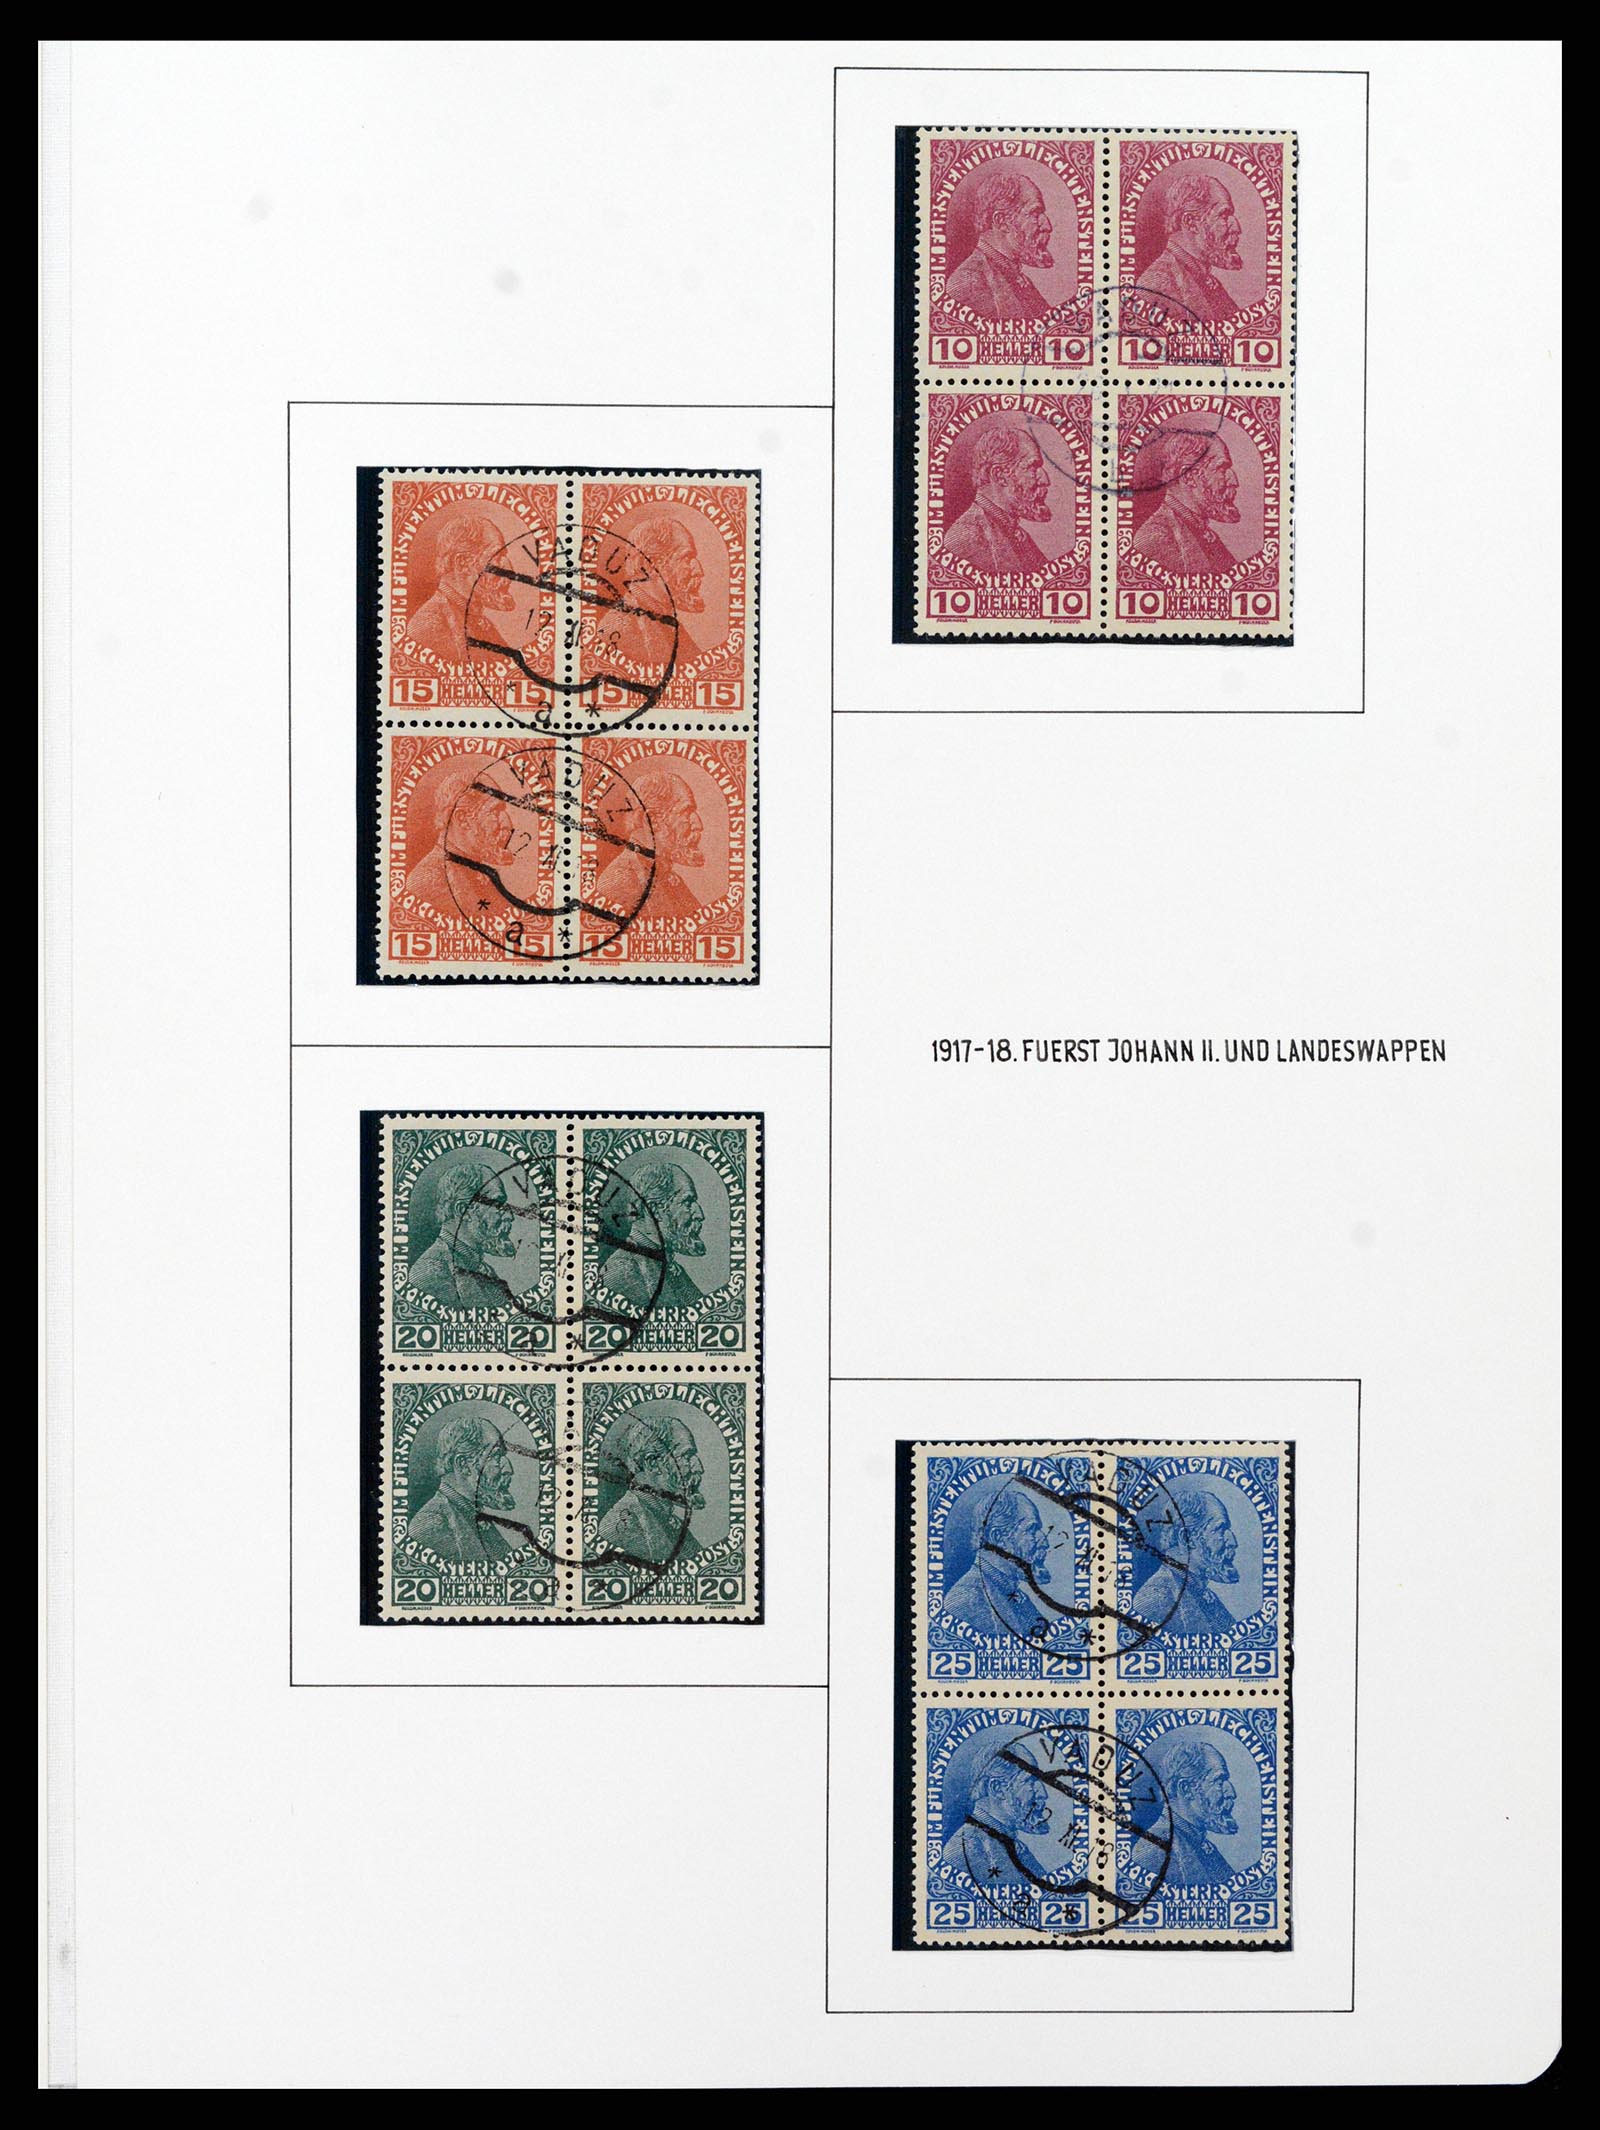 37150 0024 - Stamp collection 37150 Liechtenstein supercollection 1912-1962.